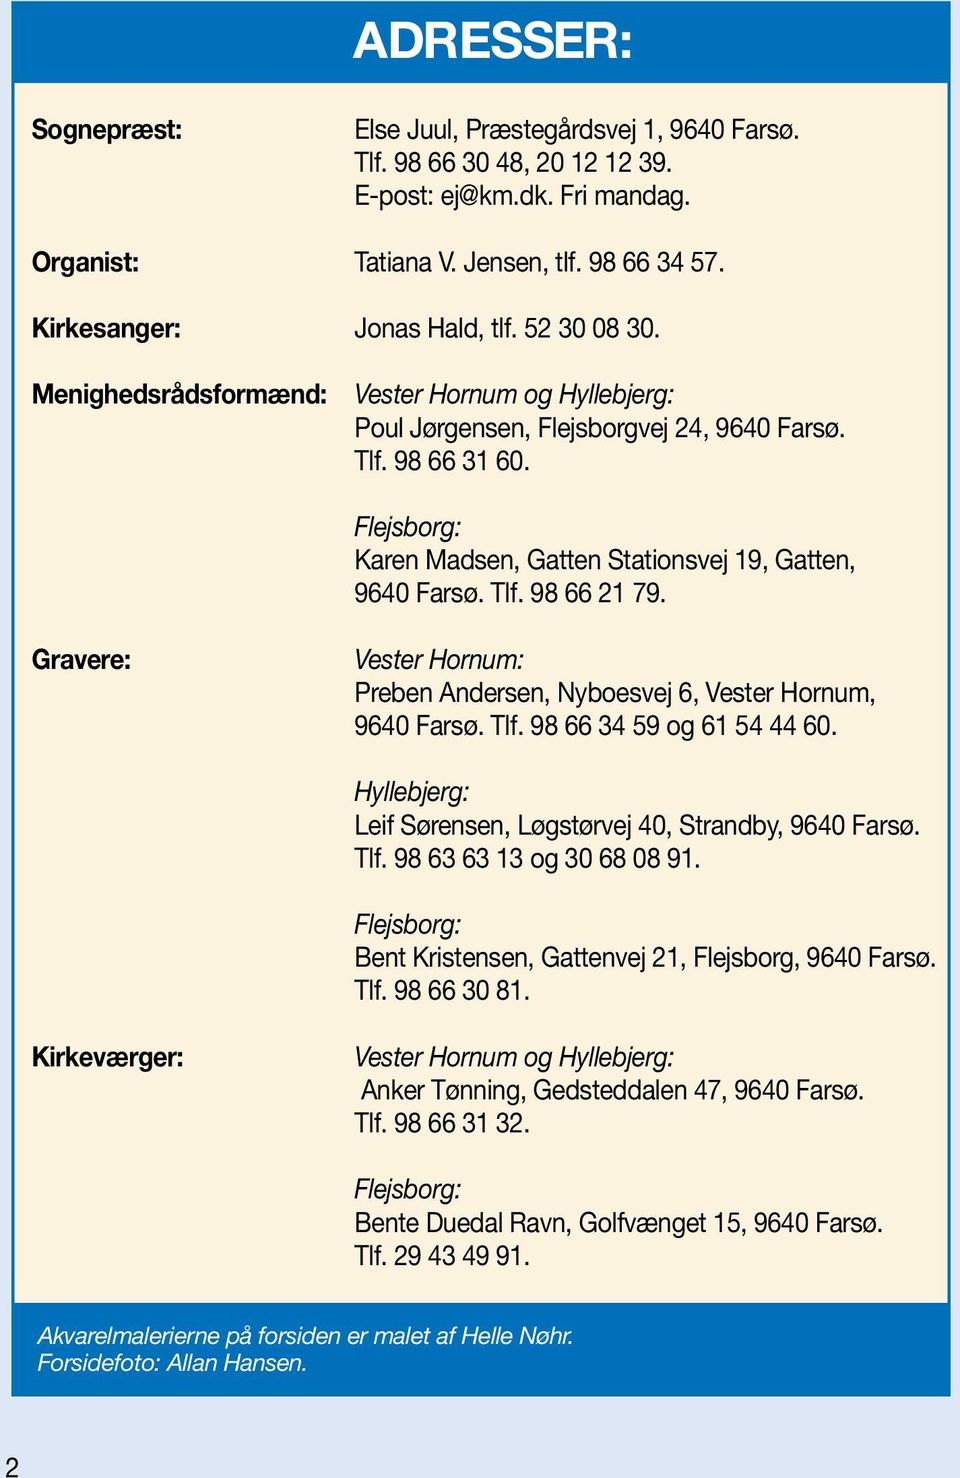 Gravere: Vester Hornum: Preben Andersen, Nyboesvej 6, Vester Hornum, 9640 Farsø. Tlf. 98 66 34 59 og 61 54 44 60. Hyllebjerg: Leif Sørensen, Løgstørvej 40, Strandby, 9640 Farsø. Tlf. 98 63 63 13 og 30 68 08 91.